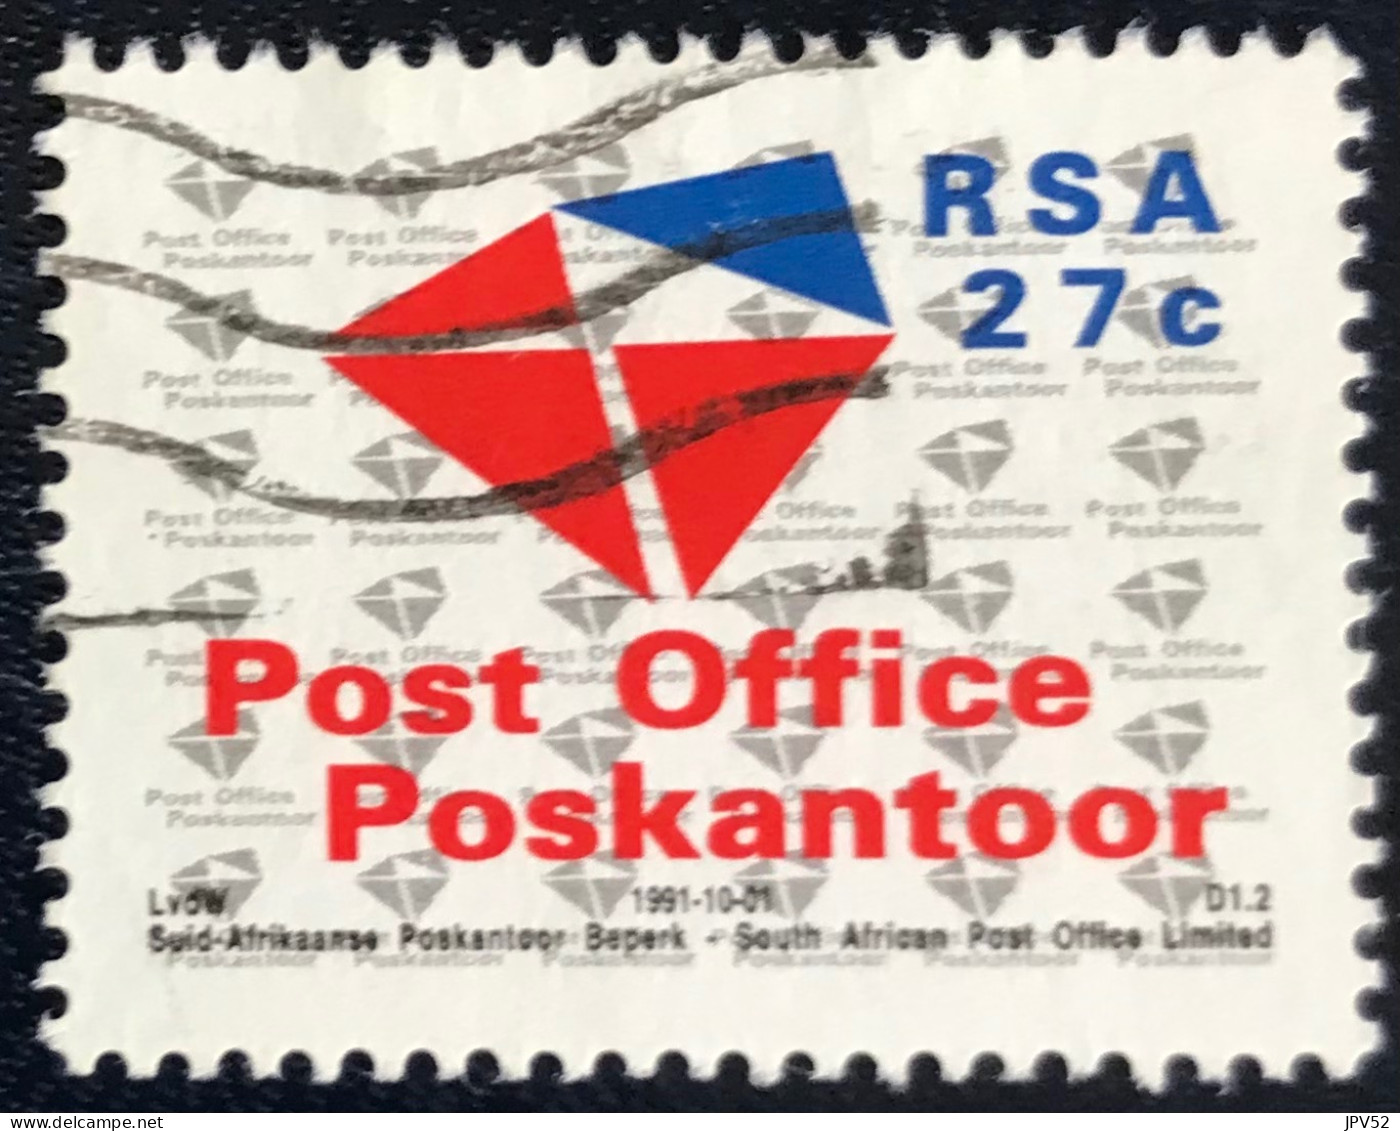 RSA - South Africa - Suid-Afrika  - C18/6 - 1991 - (°)used - Michel 823 - Nieuwe Naam Postdienst - Usados